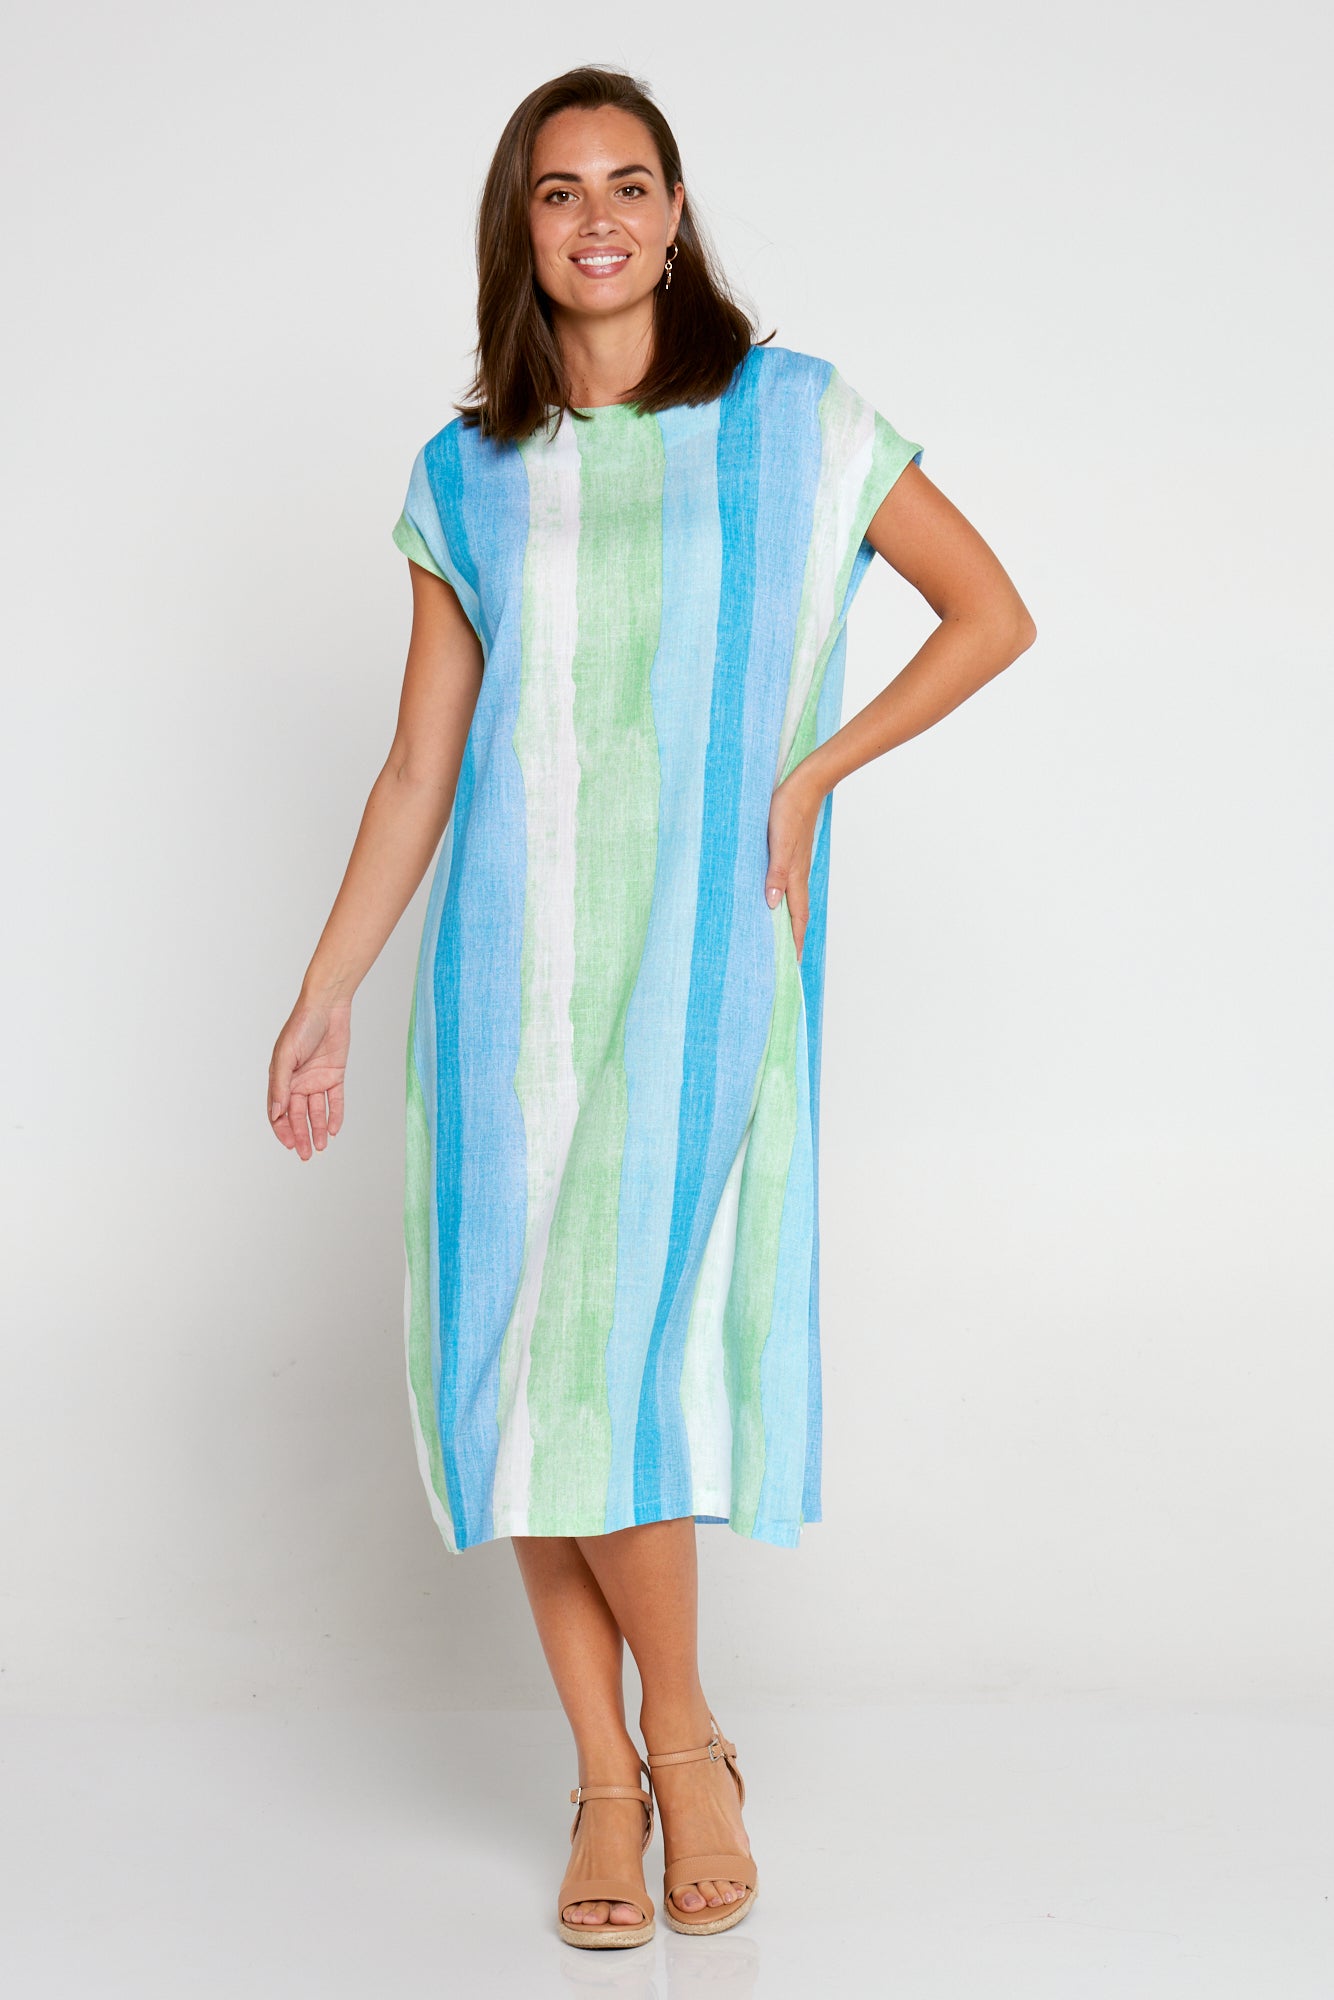 Aveline Linen Dress - Sea Foam Stripe